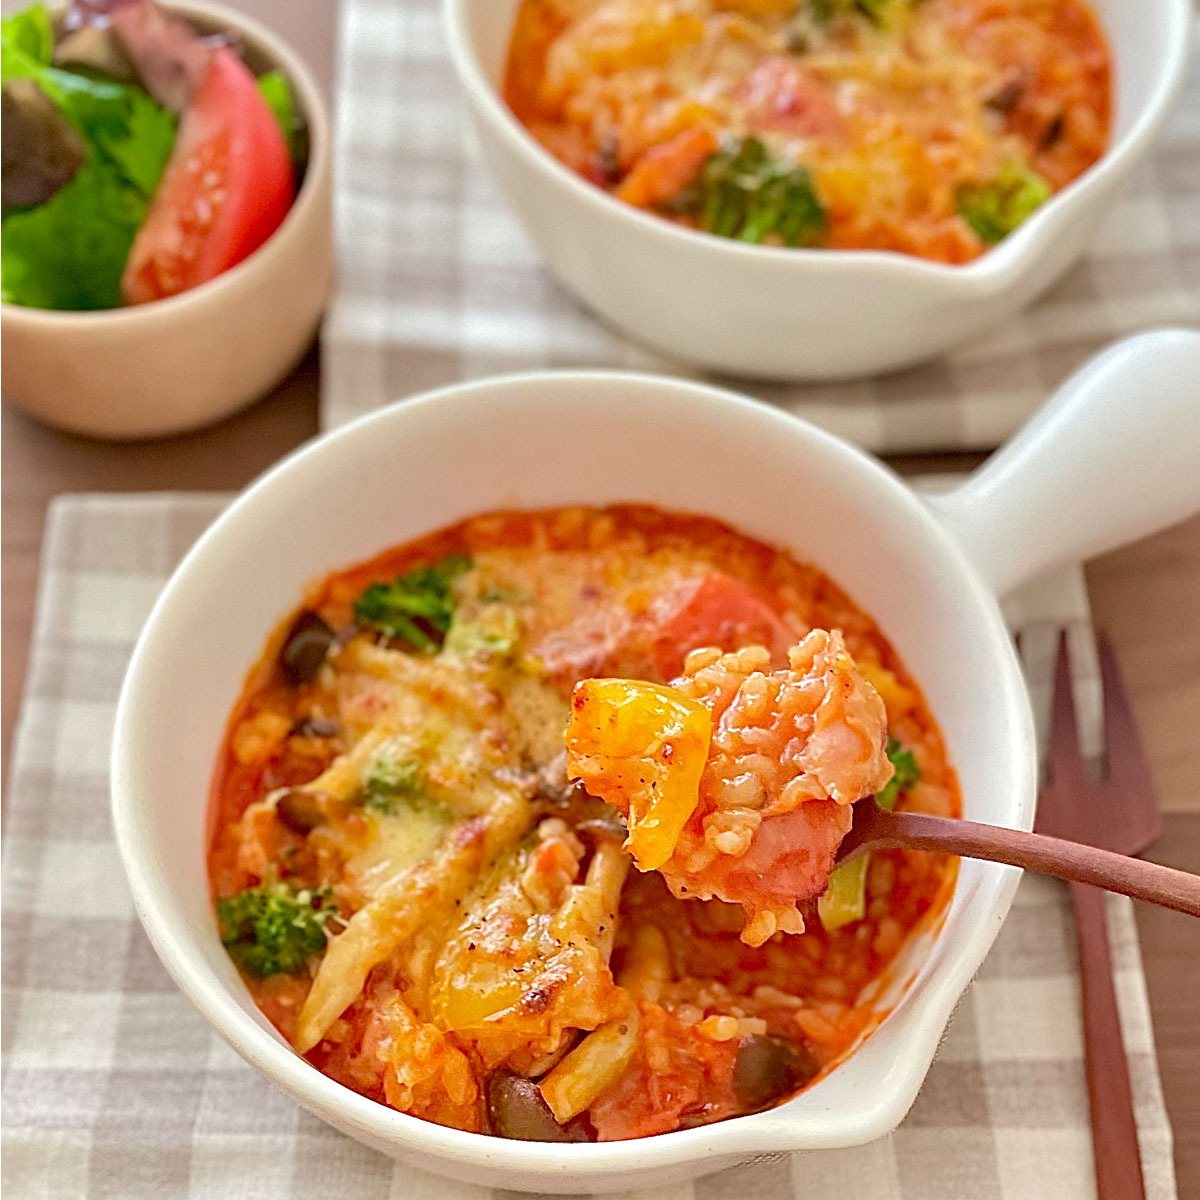 「ごろごろ野菜と玄米のトマトリゾット」画像